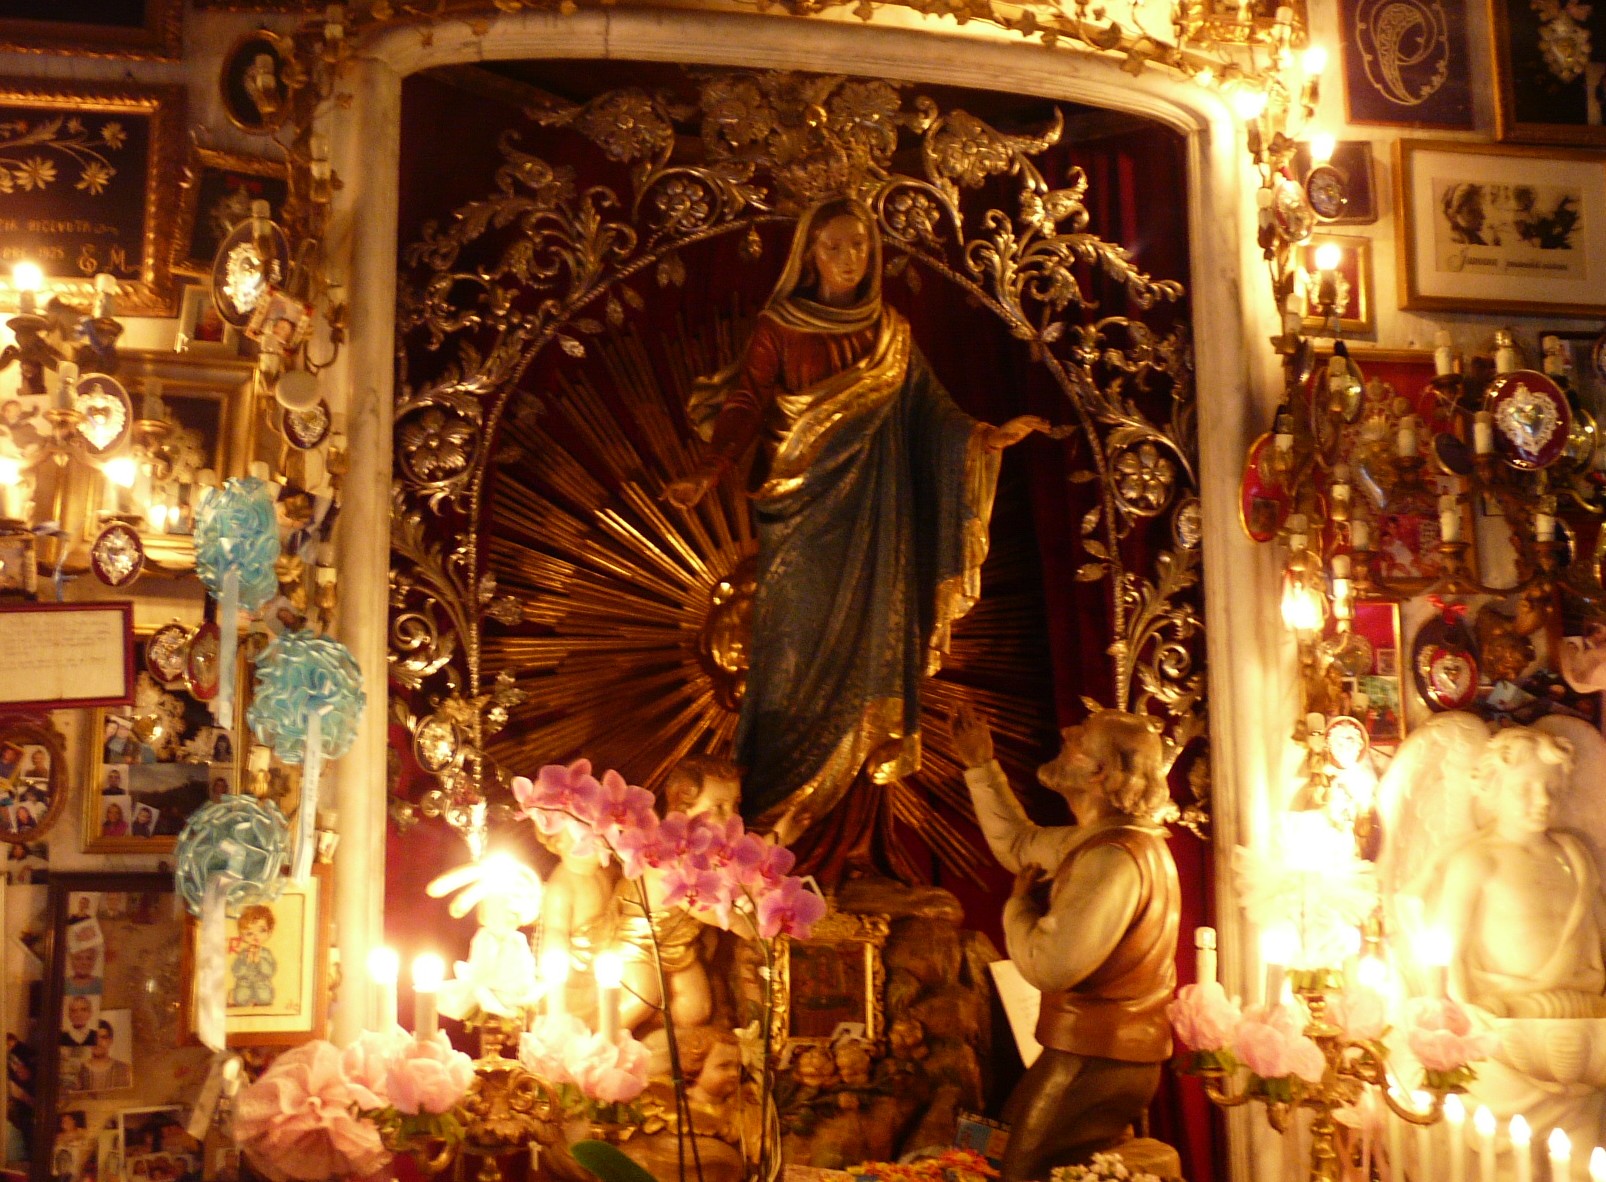 María hace Milagros y Aparece una Fuente: Nuestra Señora de Montallegro, Italia (2 de julio)